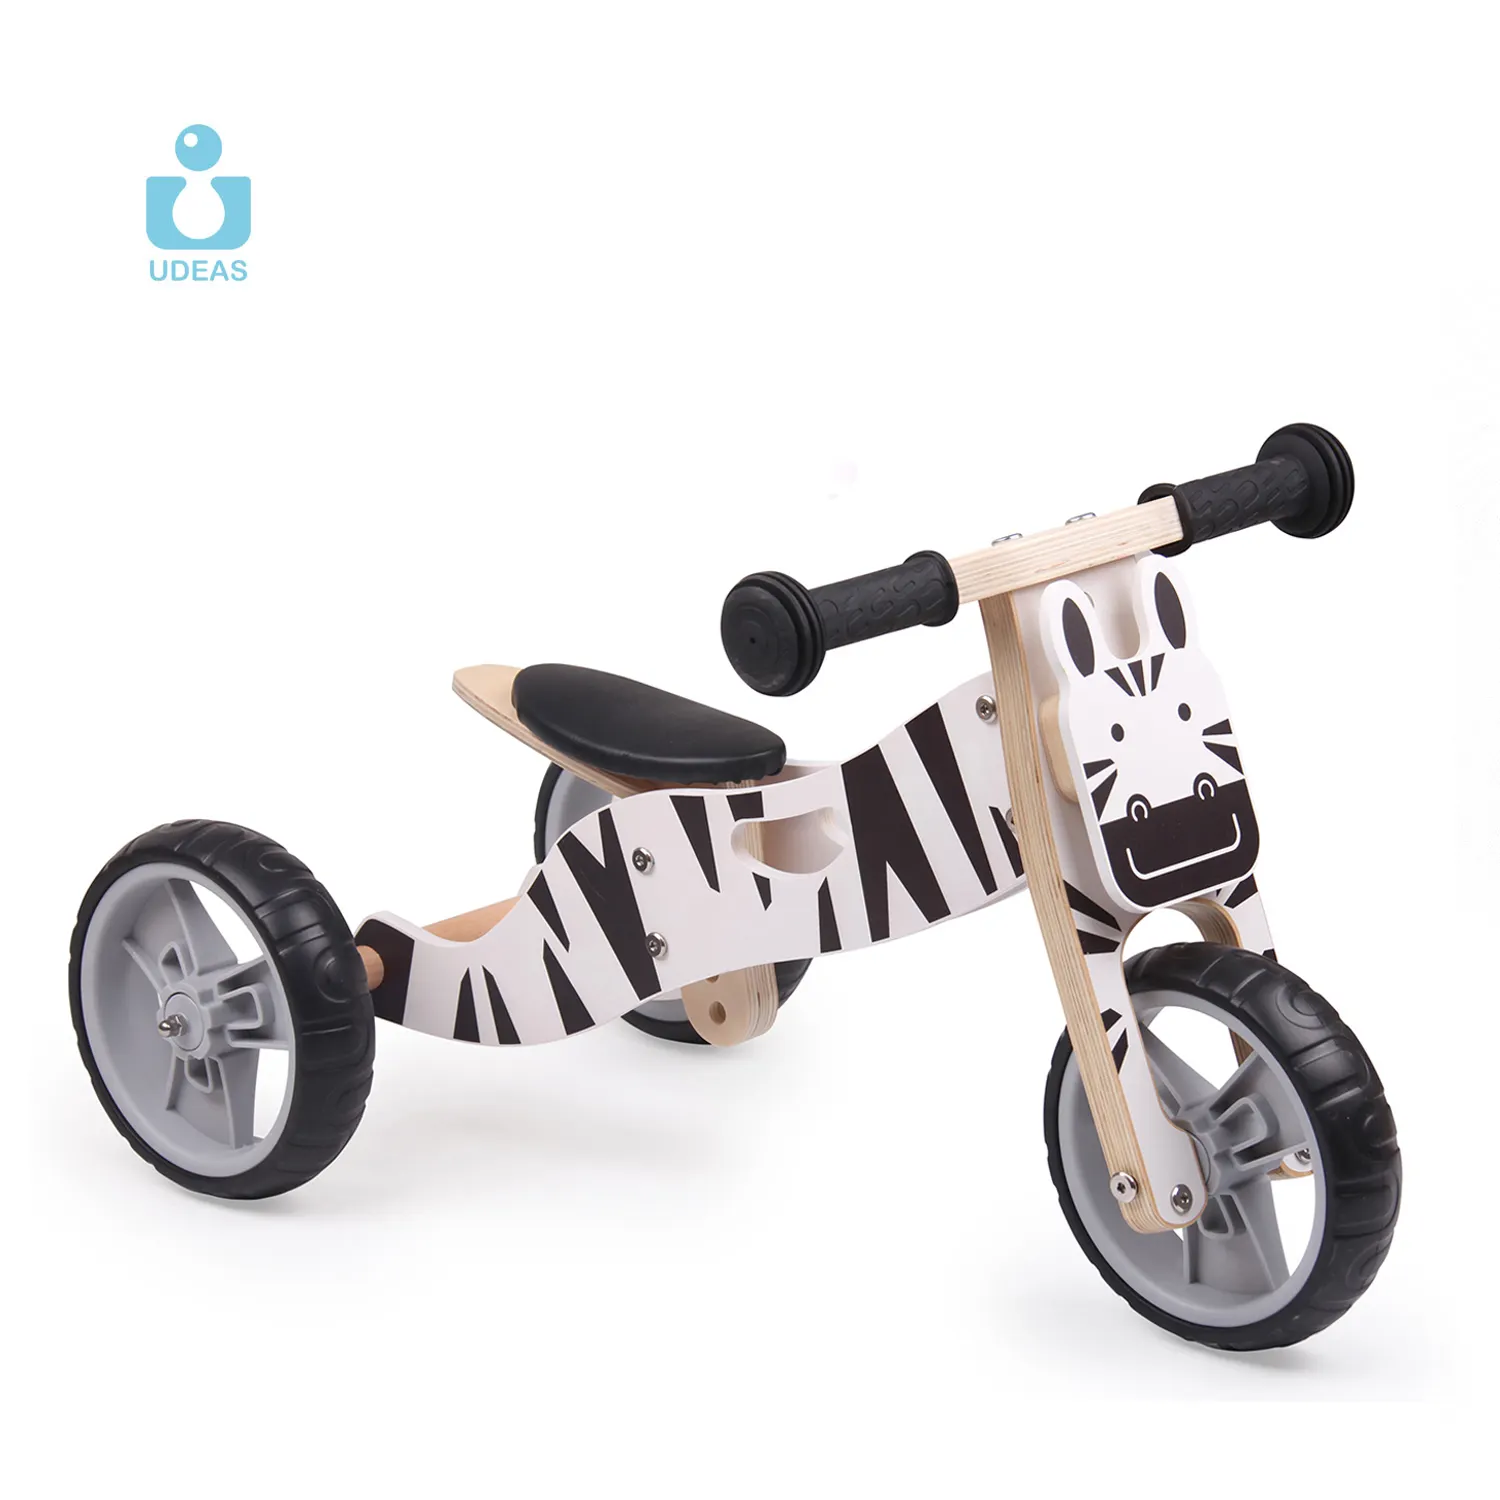 UDEAS-Bicicleta de equilibrio retro para niños, pamma, precio al por mayor